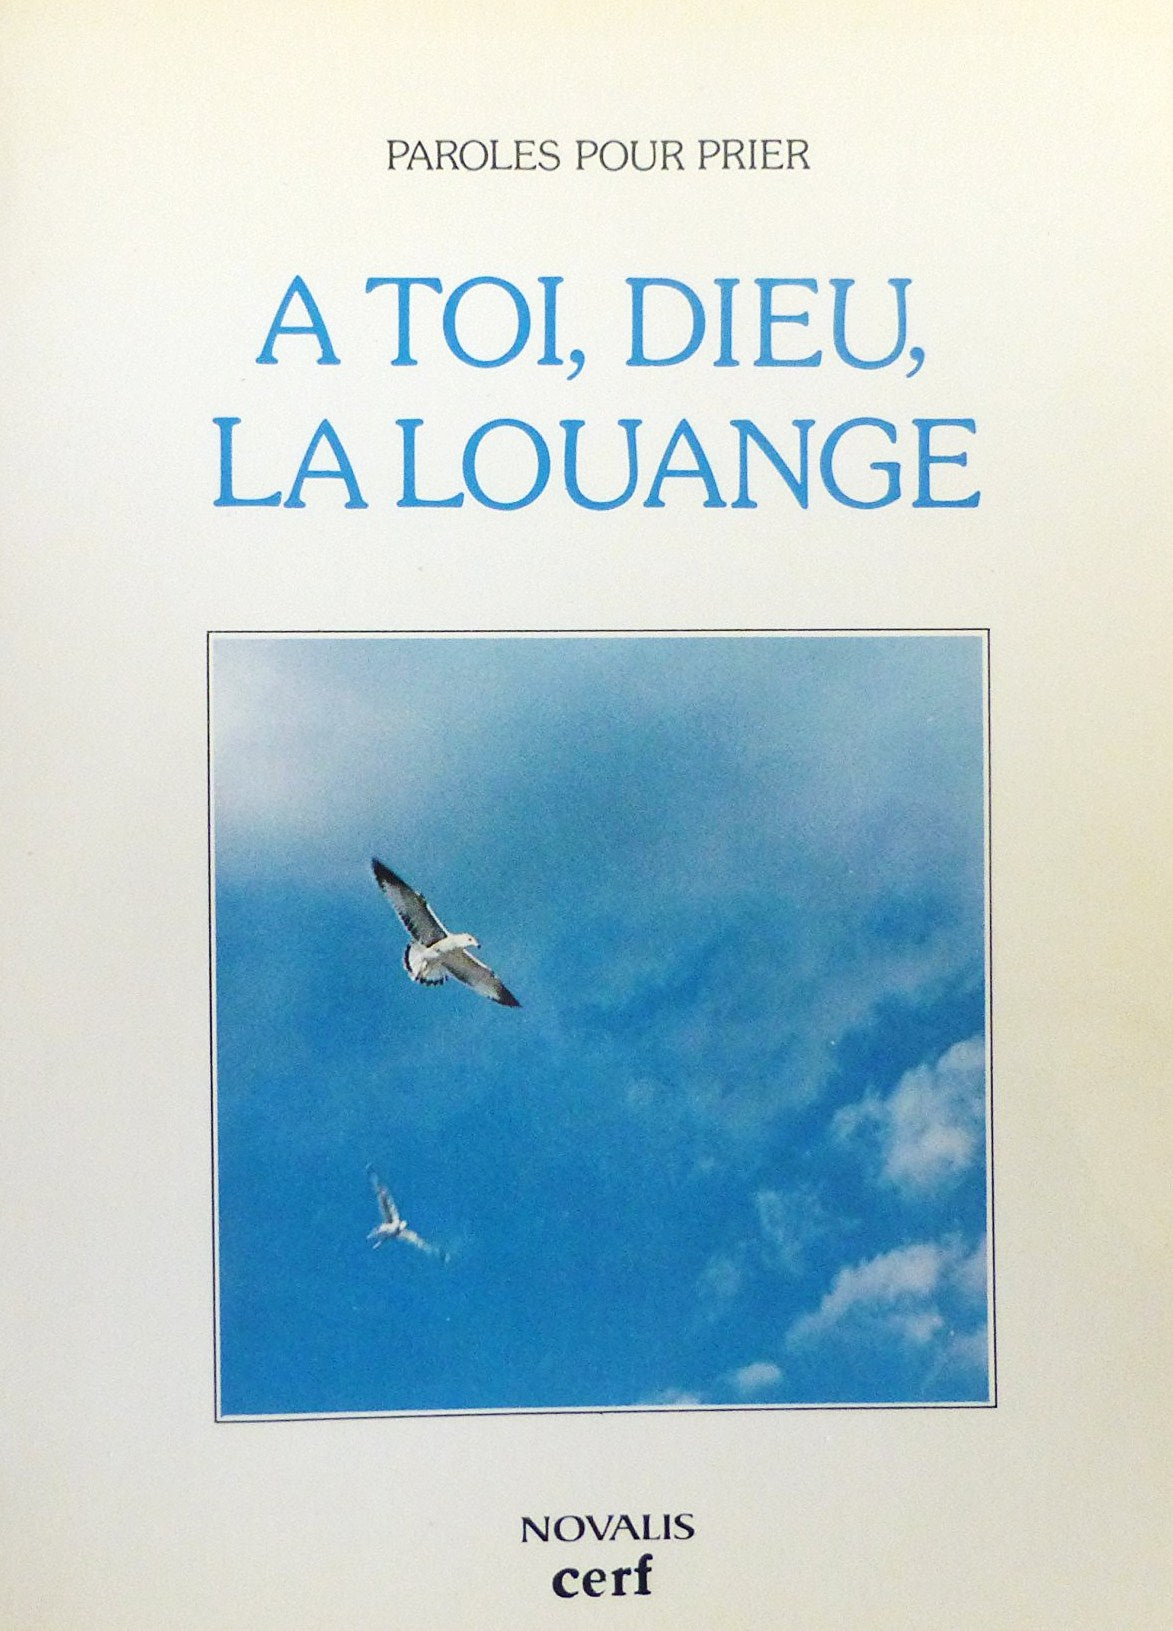 Livre ISBN 2890880664 À Toi, Dieu, la louange (Paroles pour prier) (Pierre Dufresne)